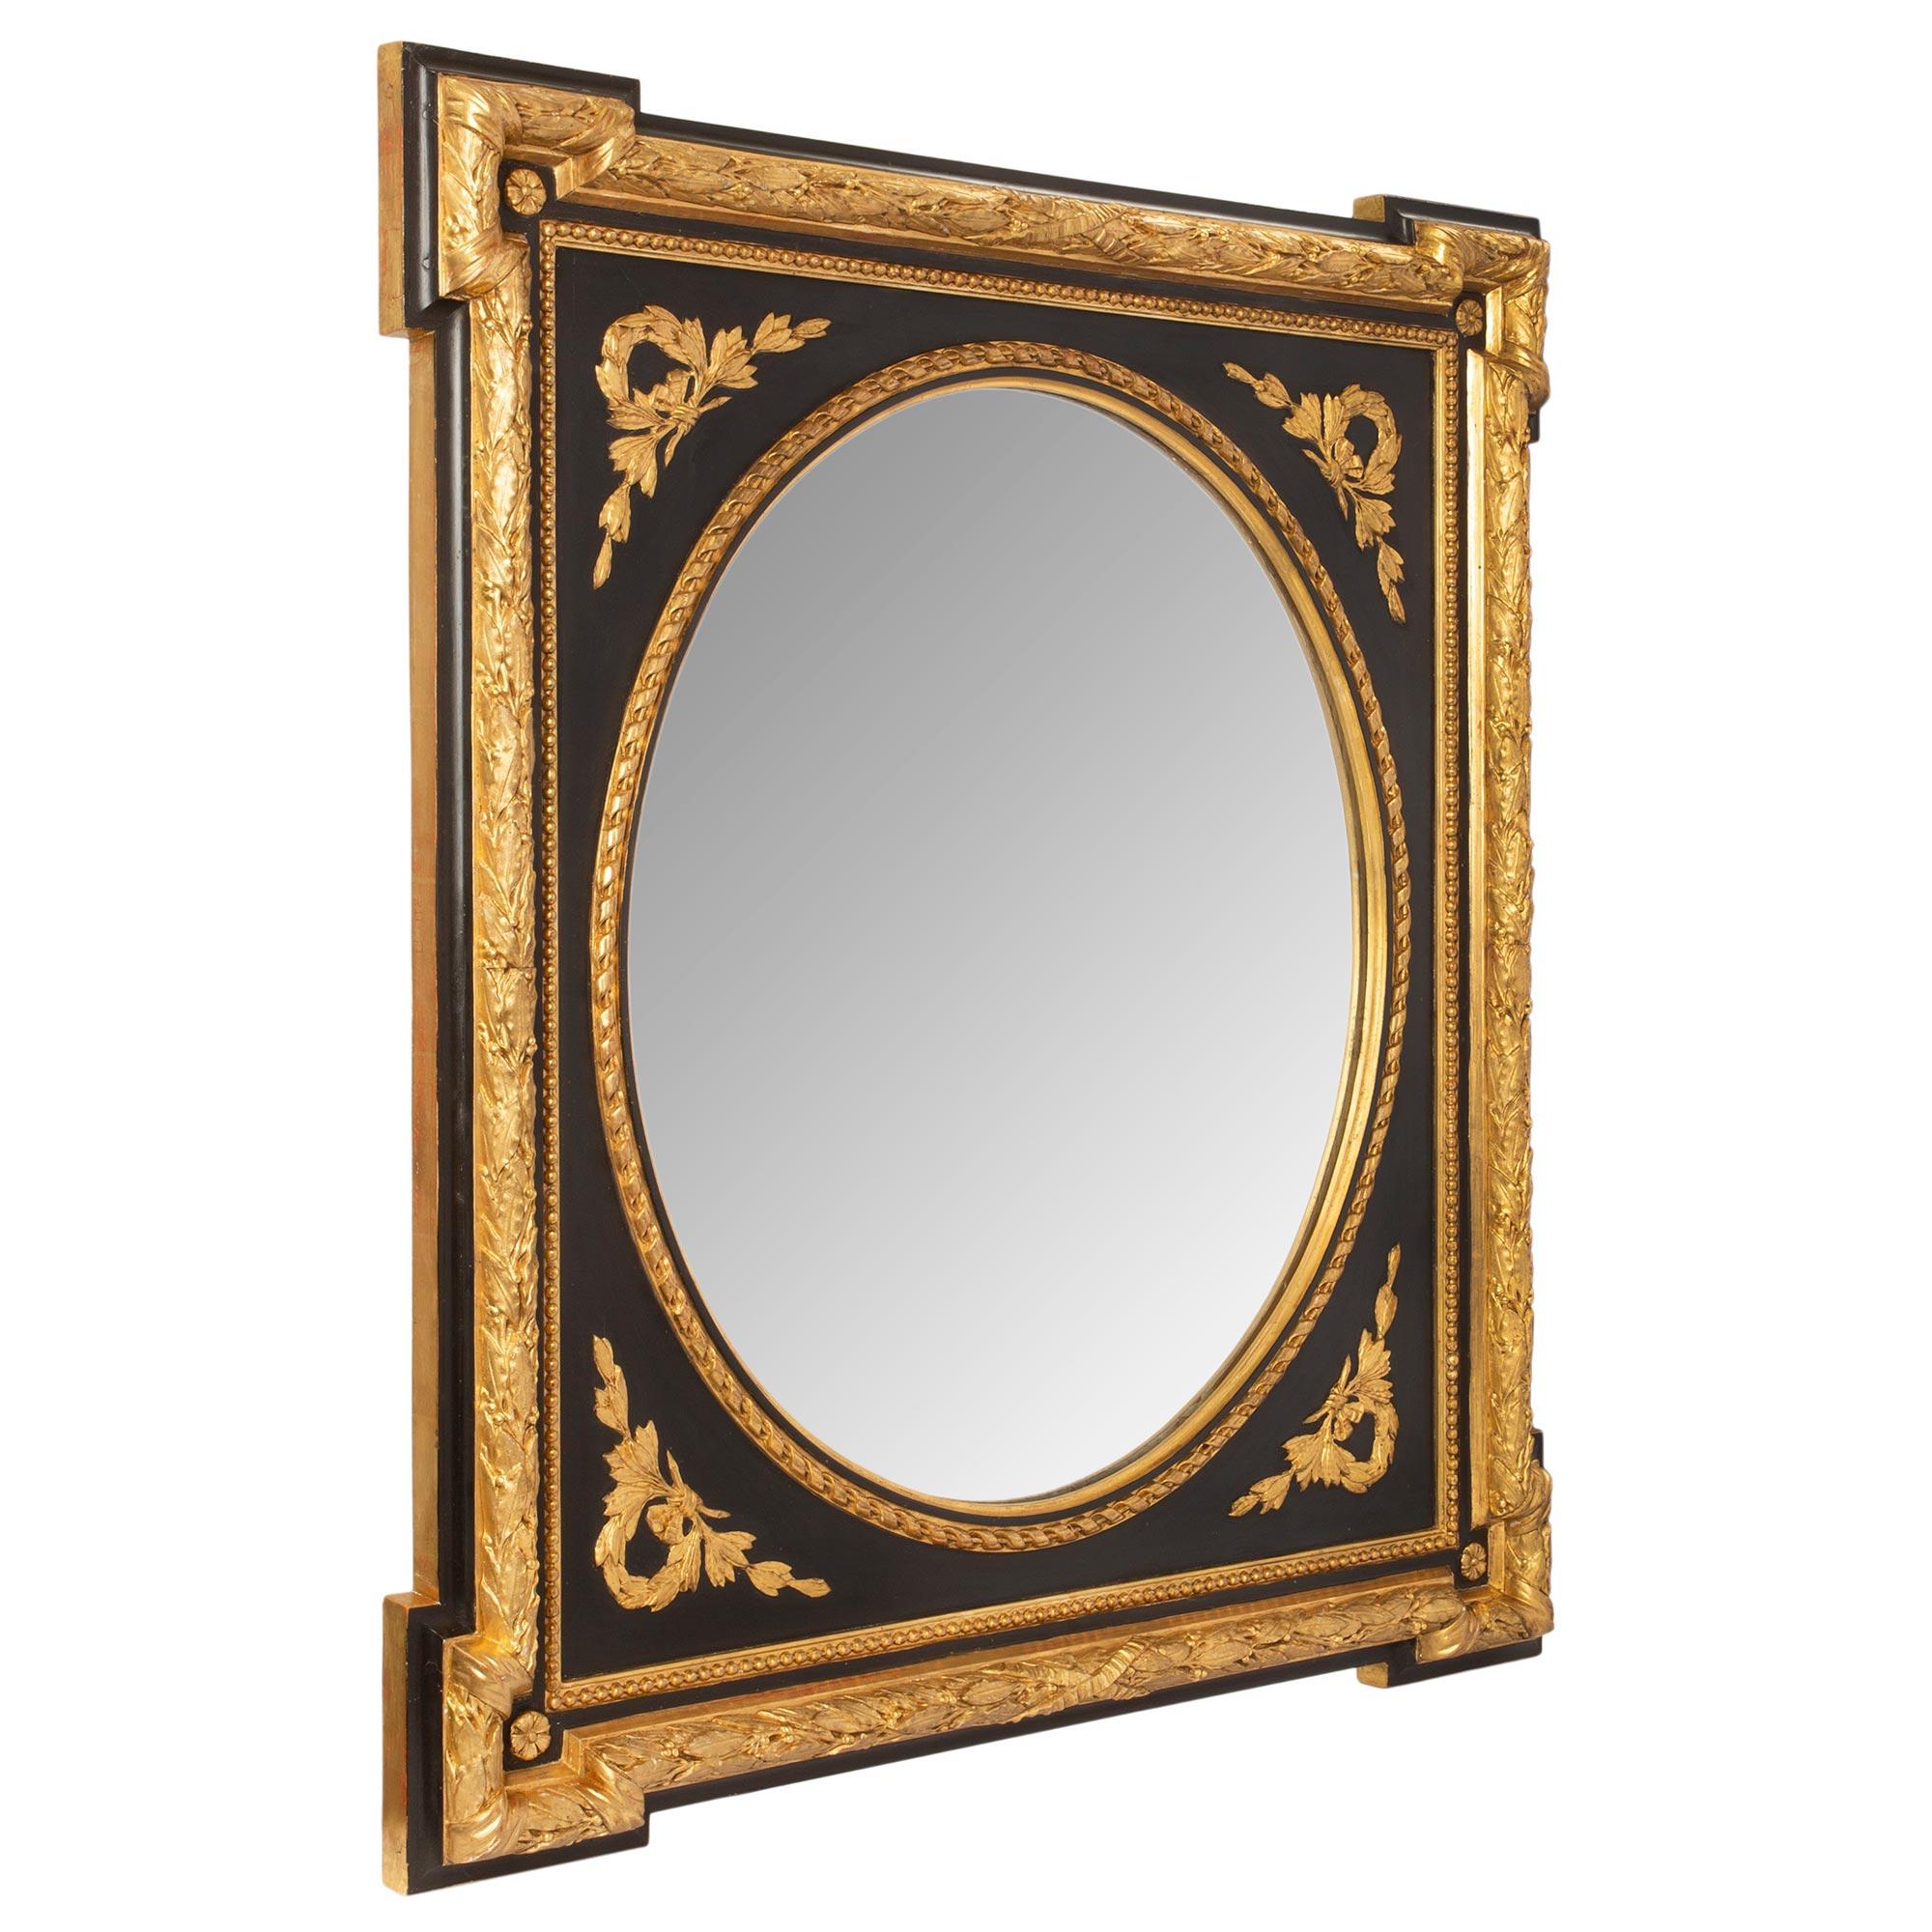 Ein sehr attraktives Paar französischer Spiegel aus dem 19. Jahrhundert aus der Zeit Napoleons III. mit Polychromie und Vergoldung. Der äußere Rand des Rahmens ist mit kühnen und detailreichen Lorbeerbändern versehen, die an zwei Enden ein